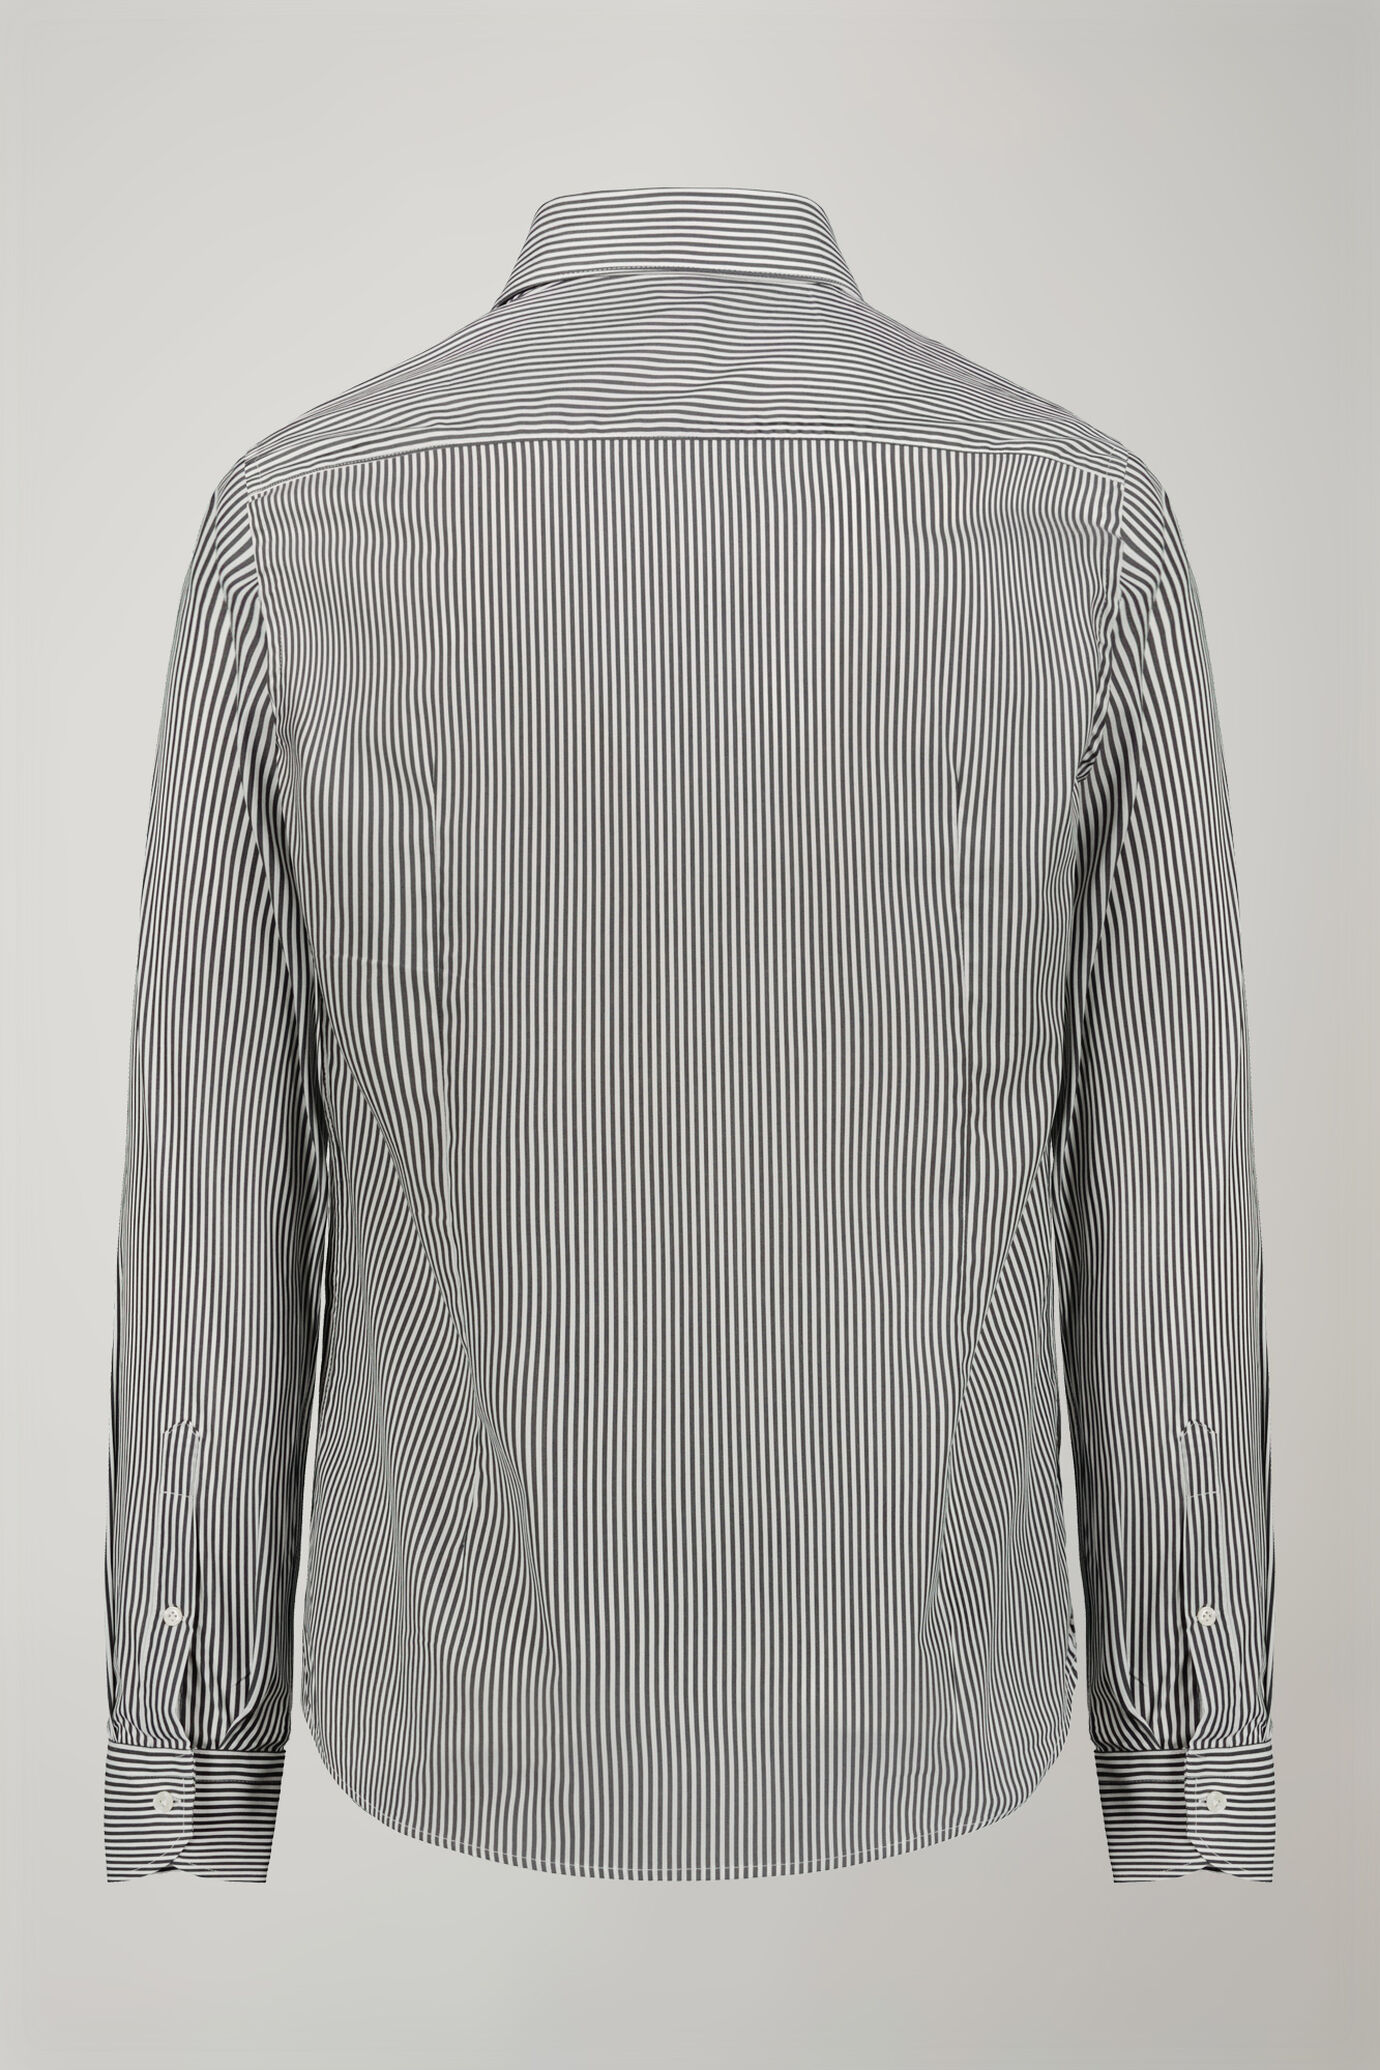 Camicia tecnica uomo collo classico tessuto nylon stampato a righe regular fit image number 6